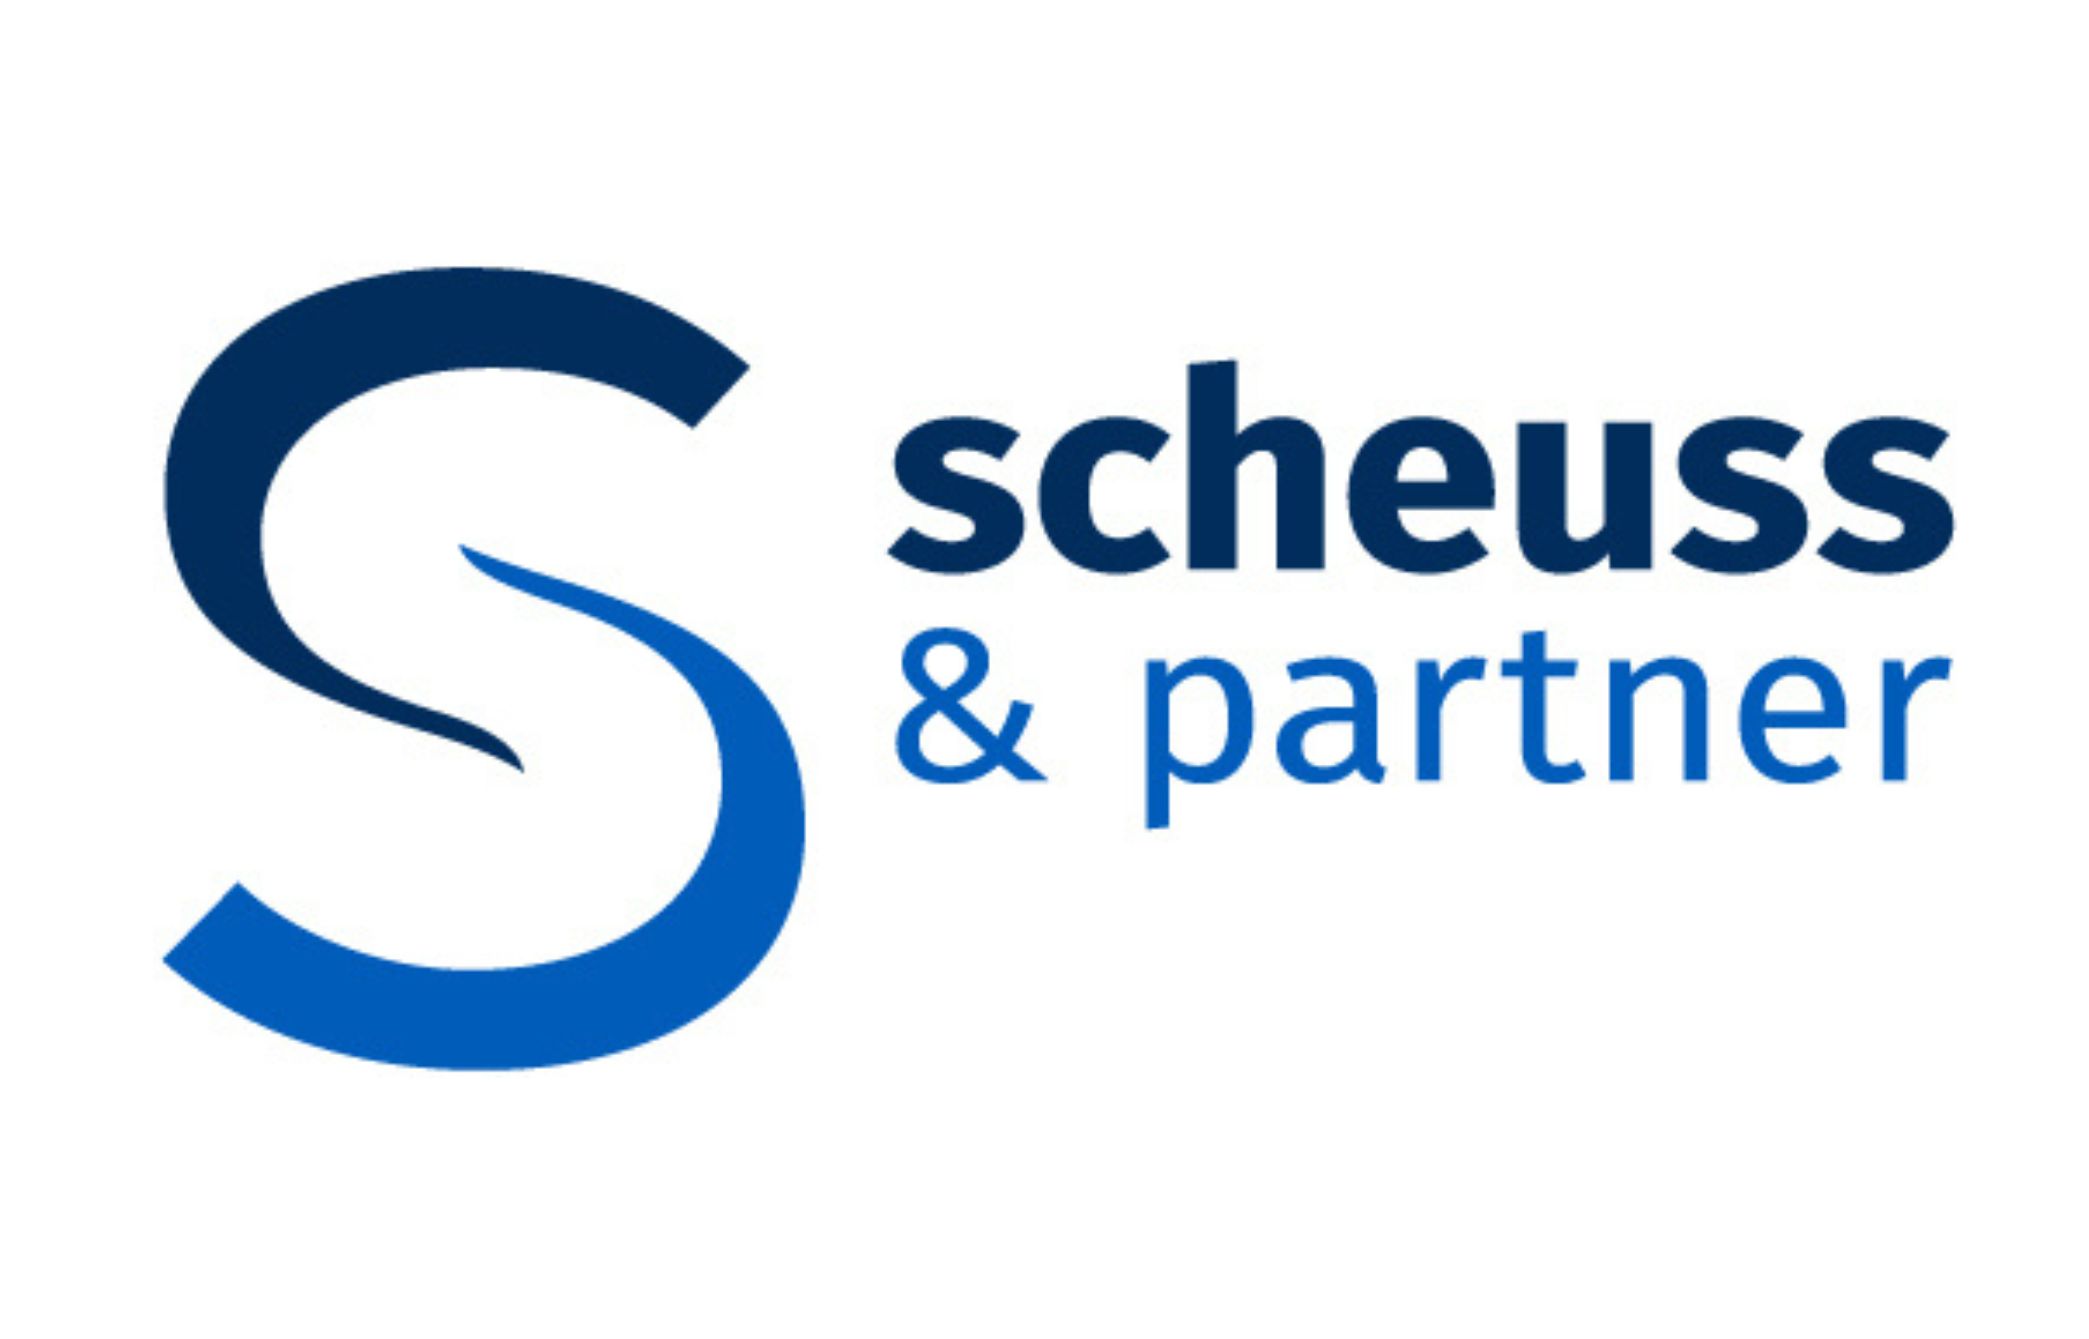 Scheuss & Partner